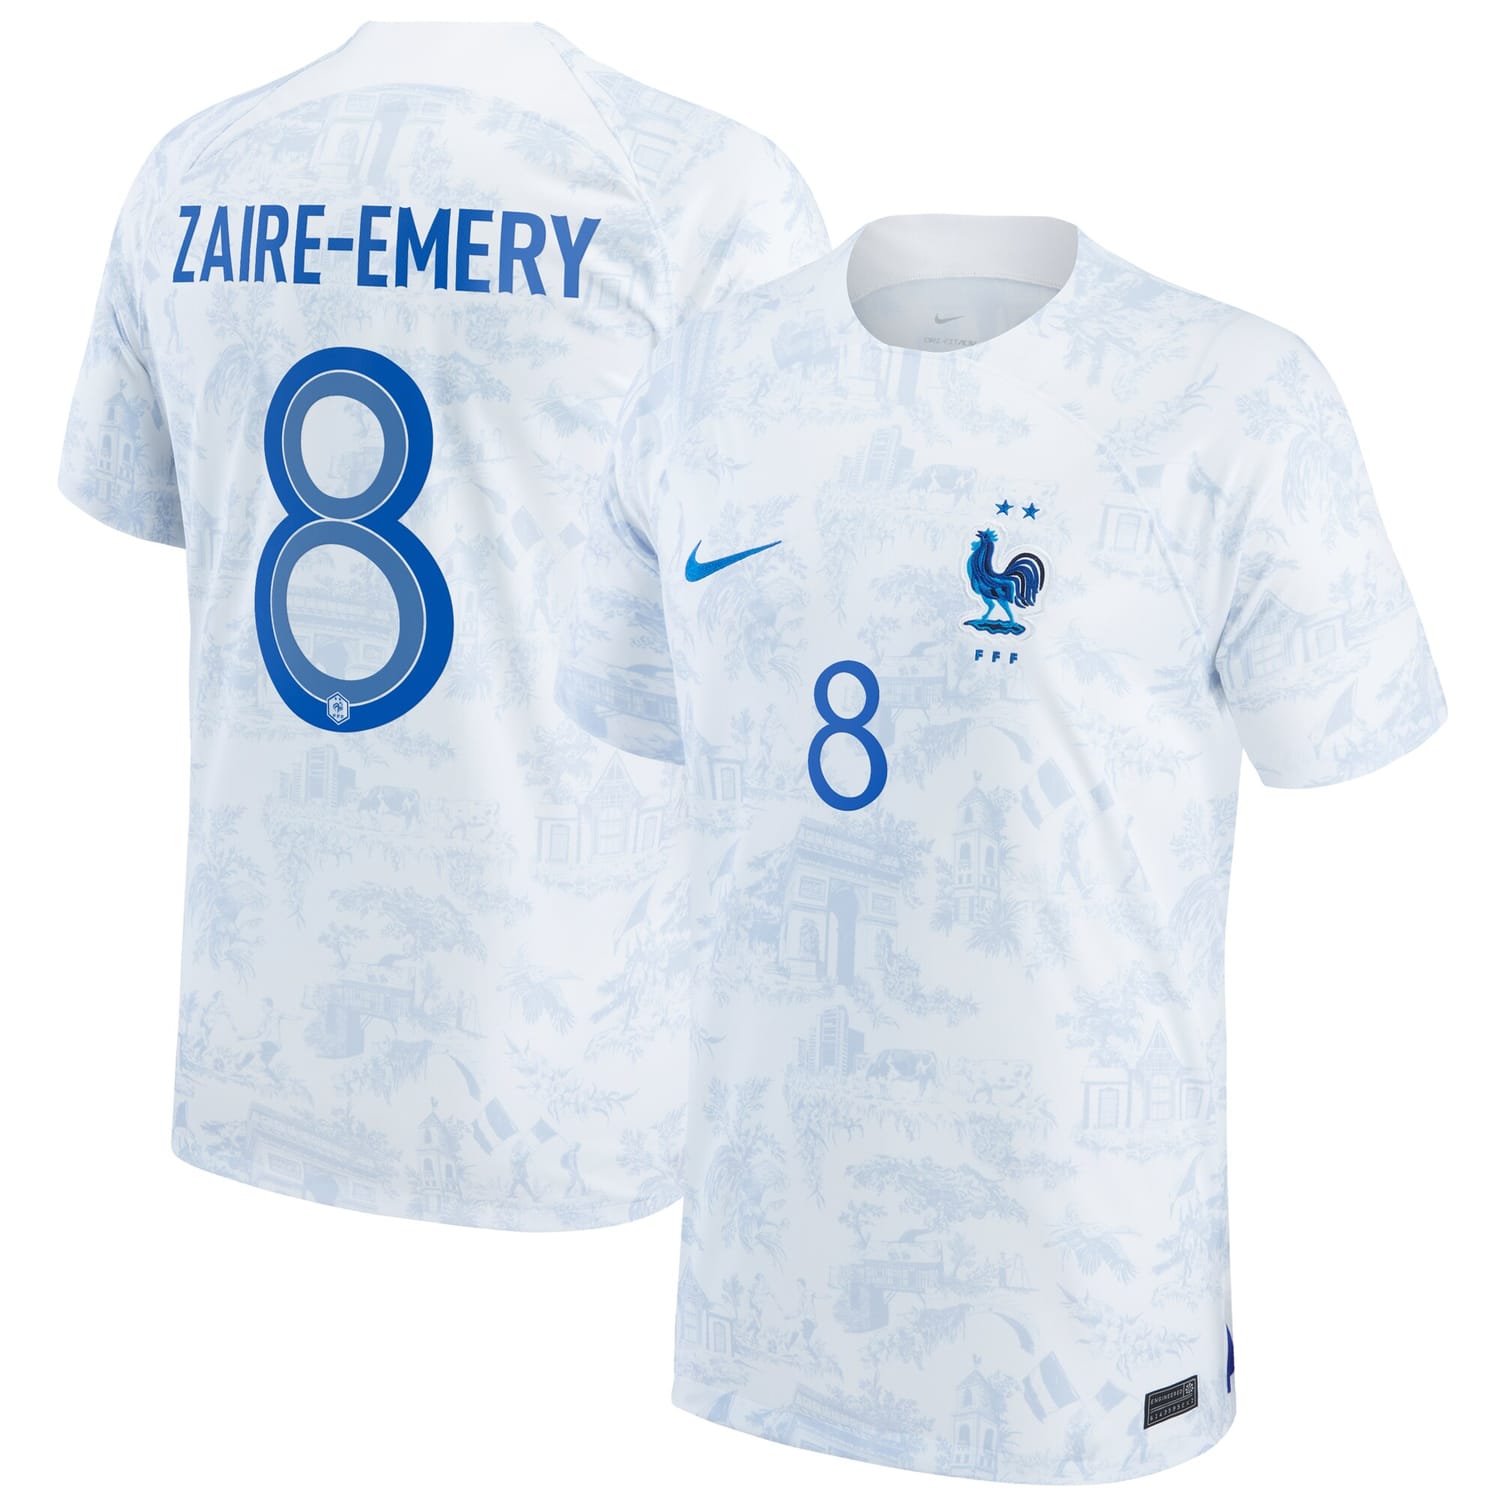 France National Team Away Jersey Shirt 2022 player Warren Zaïre-Emery 8 printing for Men